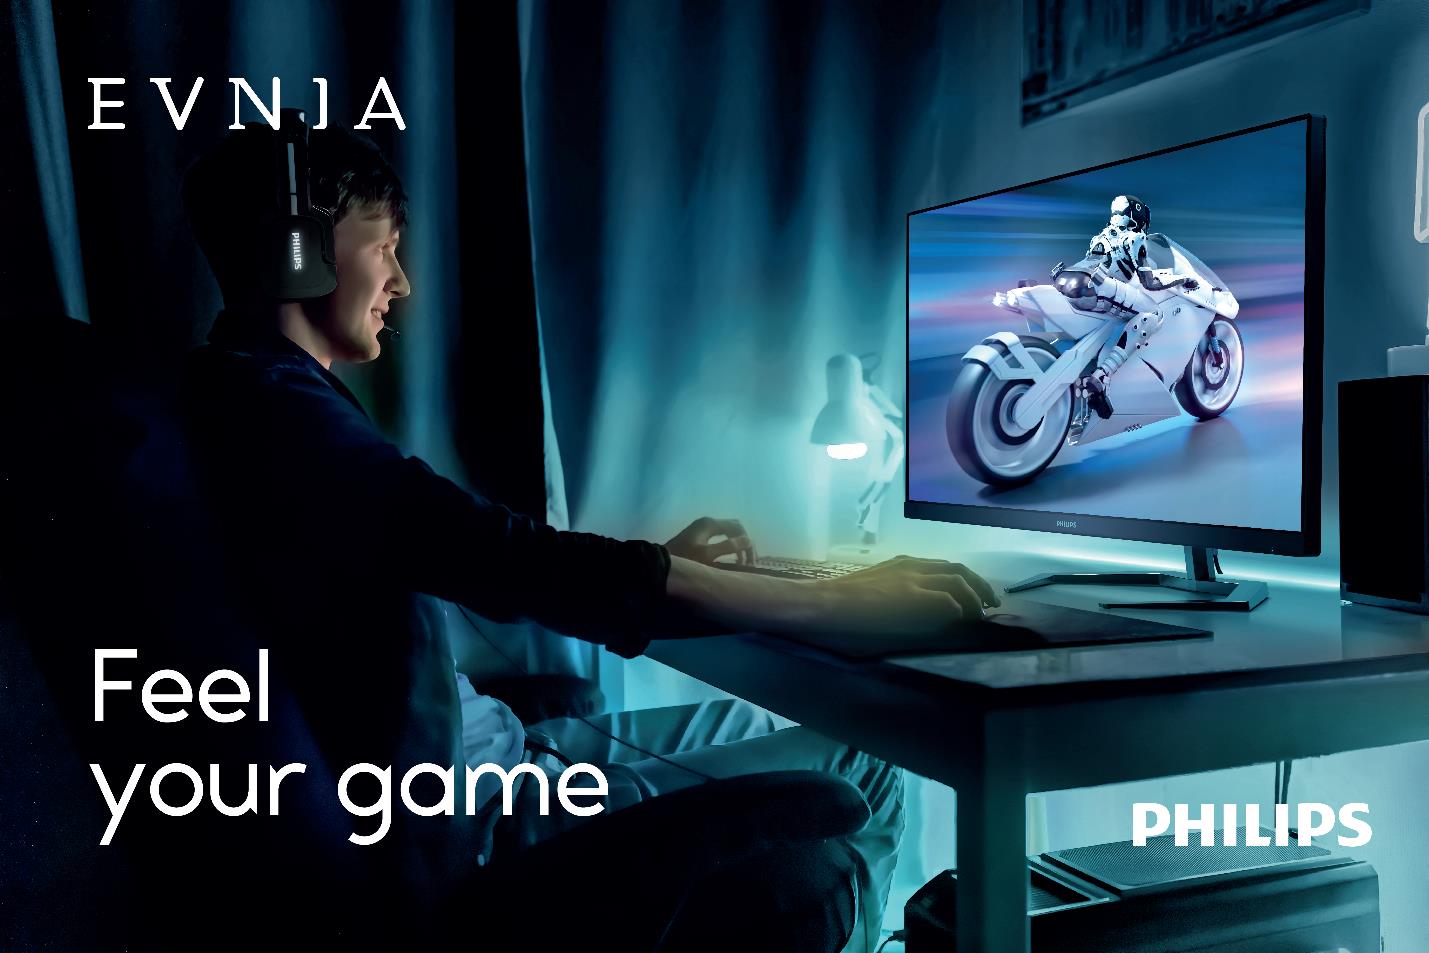  Philips Evnia Gaming Monitors đồng hành cùng bộ phim của Universal Pictures, Fast-X - Ảnh 2.